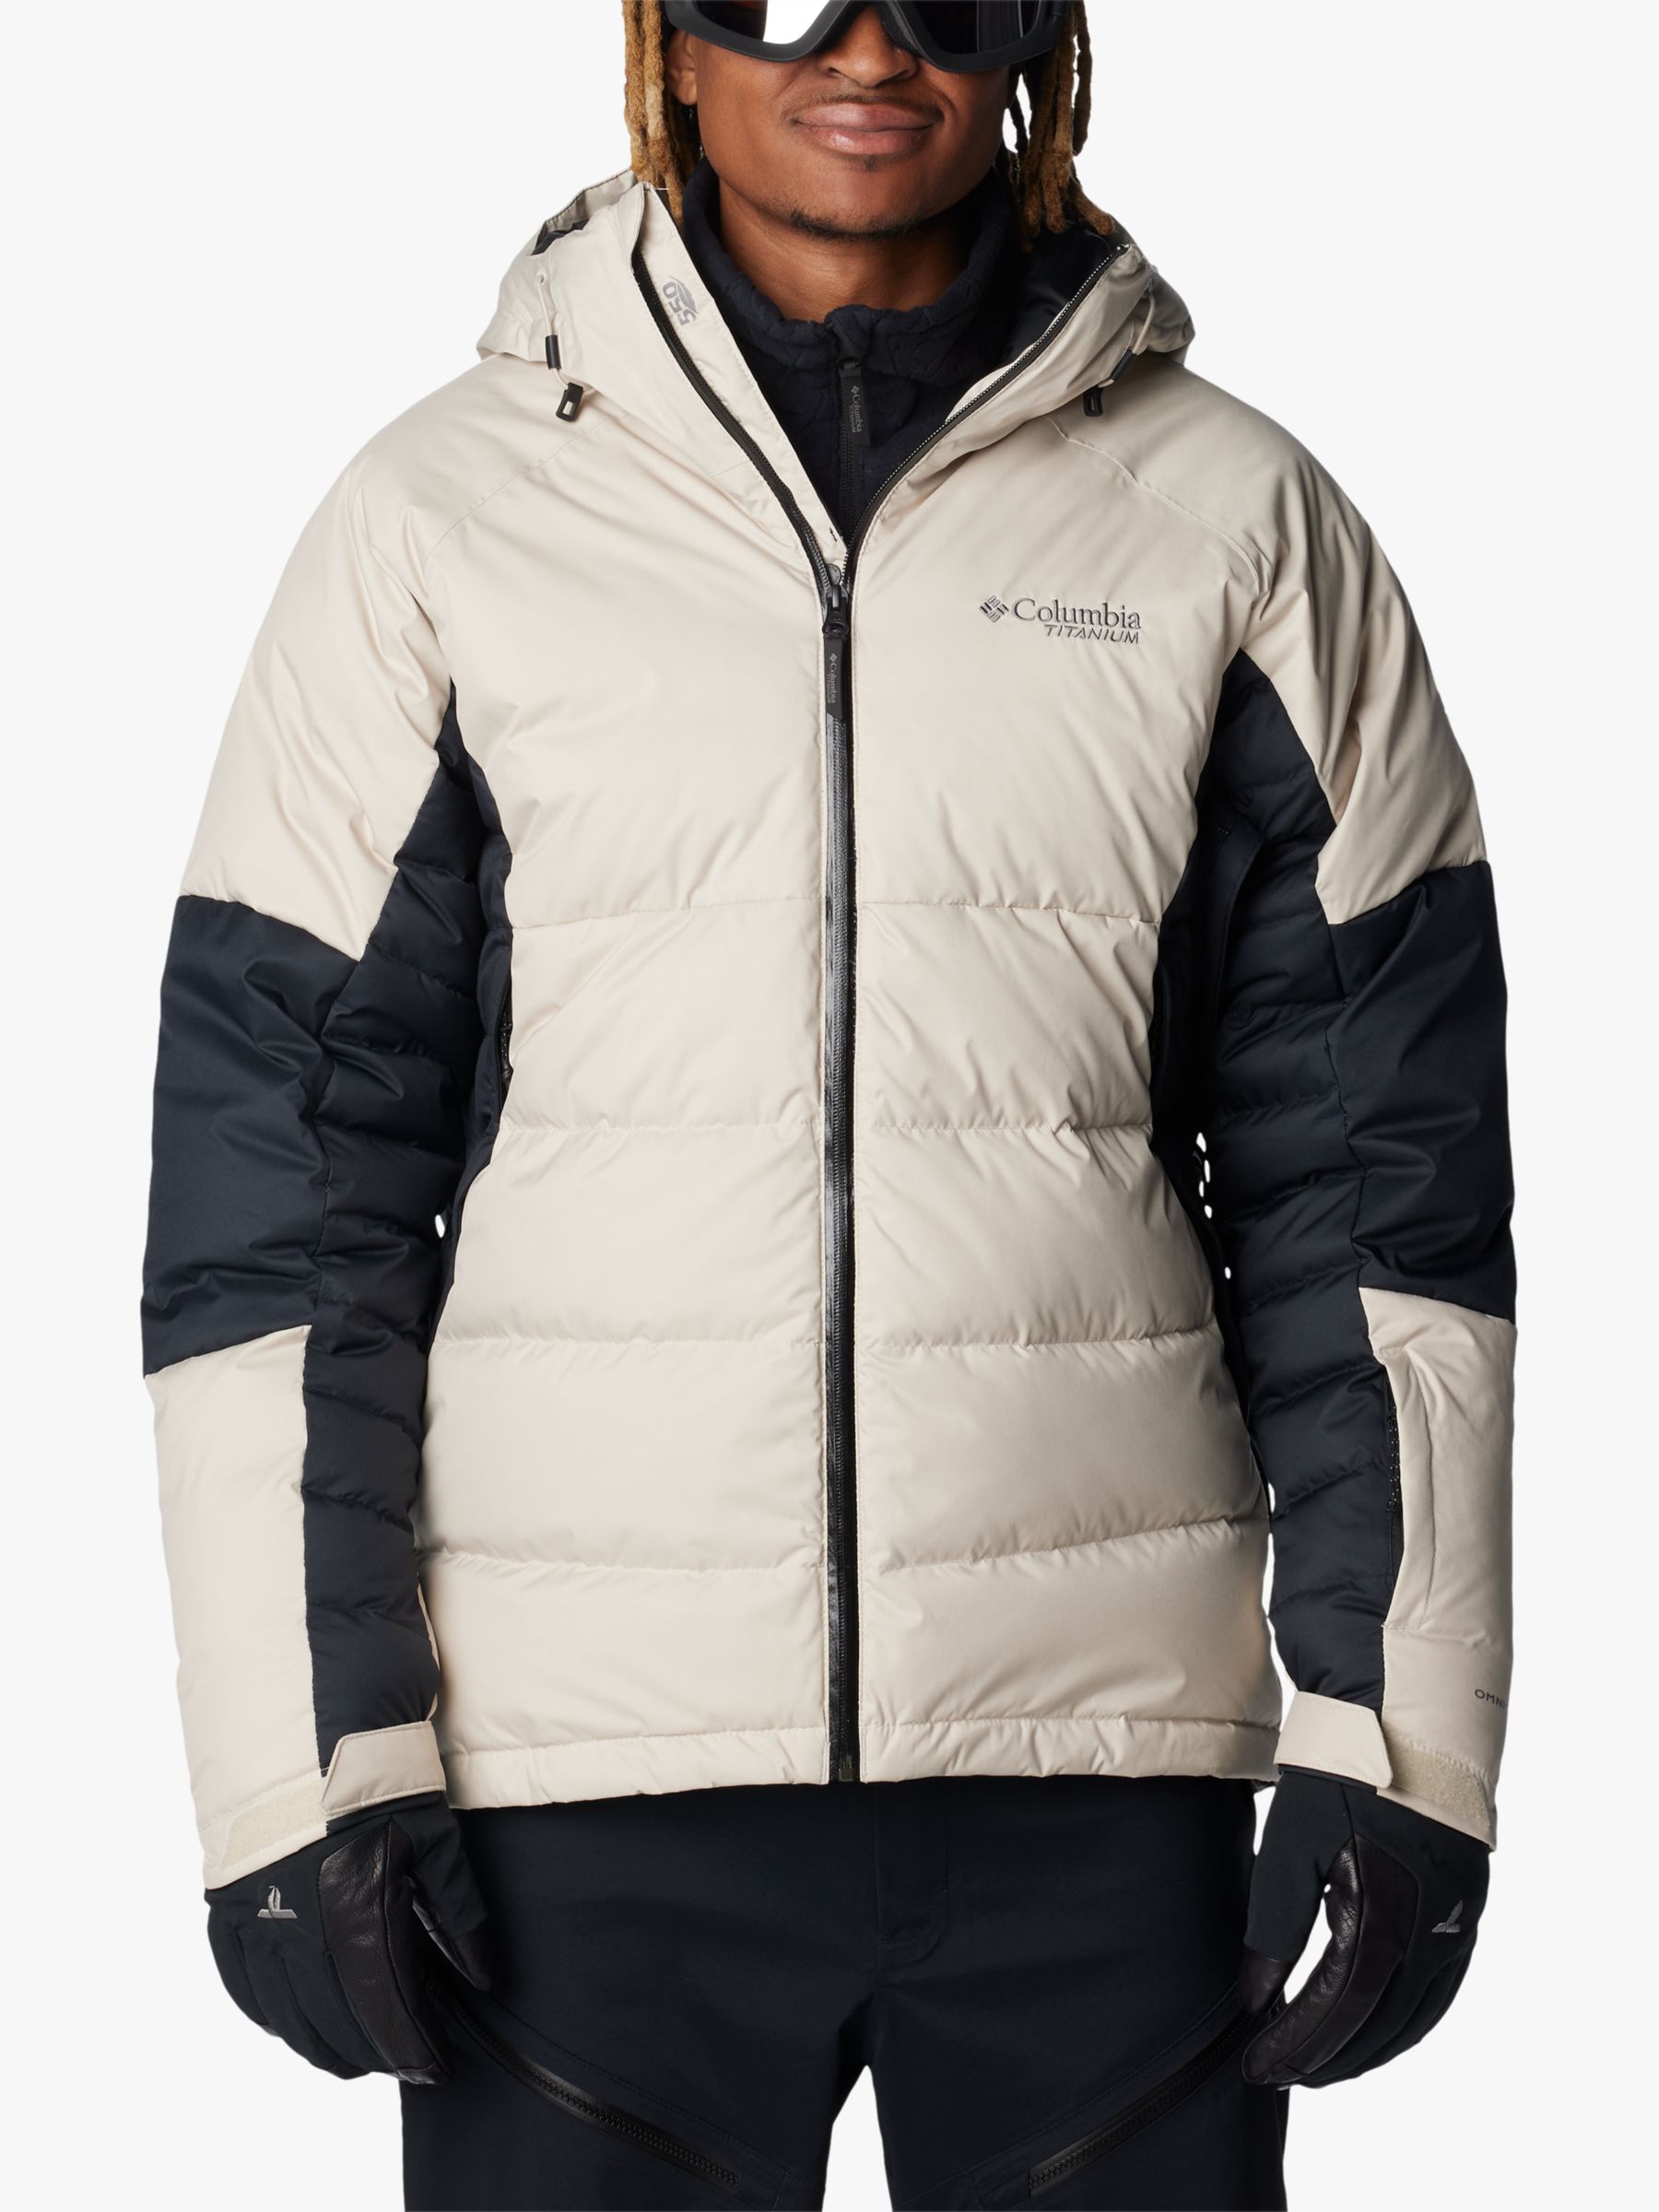 Мужская водонепроницаемая лыжная куртка Roaring Fork Columbia, темный камень/черный